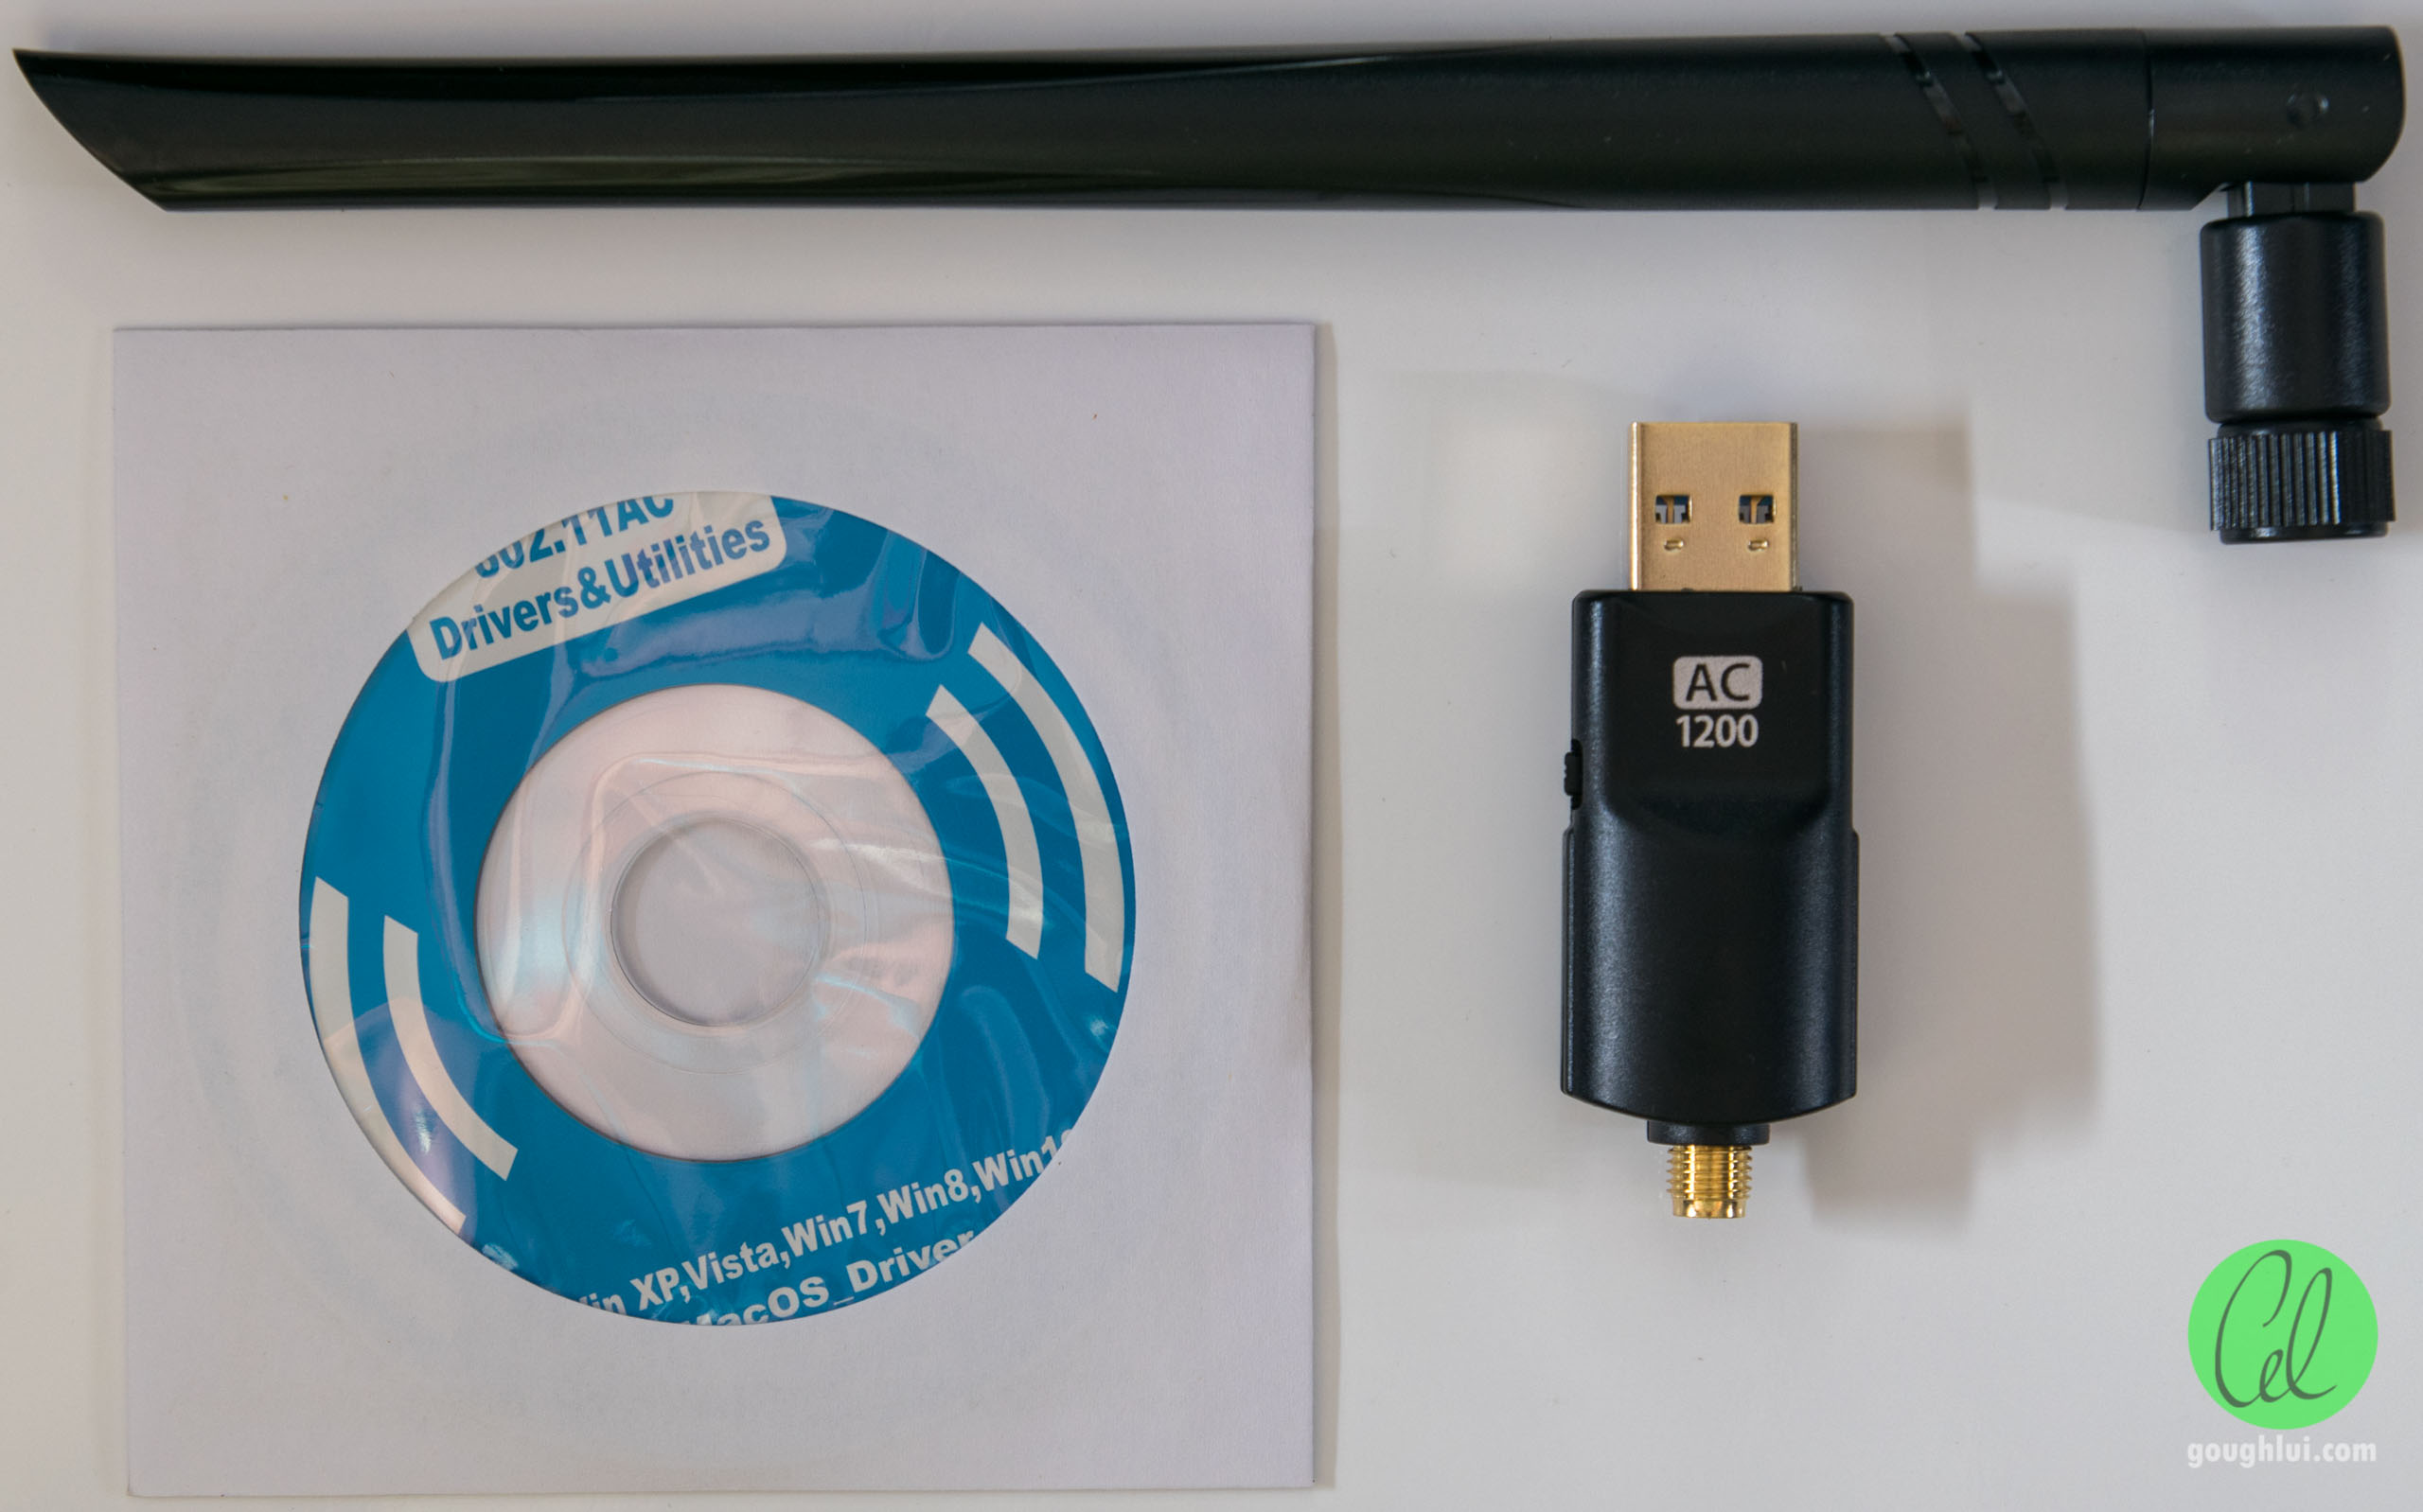 Драйвер realtek 802.11 n. USB Wi-Fi адаптер Realtek 802.11AC nic. Realtek 8812bu Wireless lan 802.11AC USB nic драйвер. Dual Band 1200ac драйвер. AC 1300 WIFI USB адаптер драйвер.